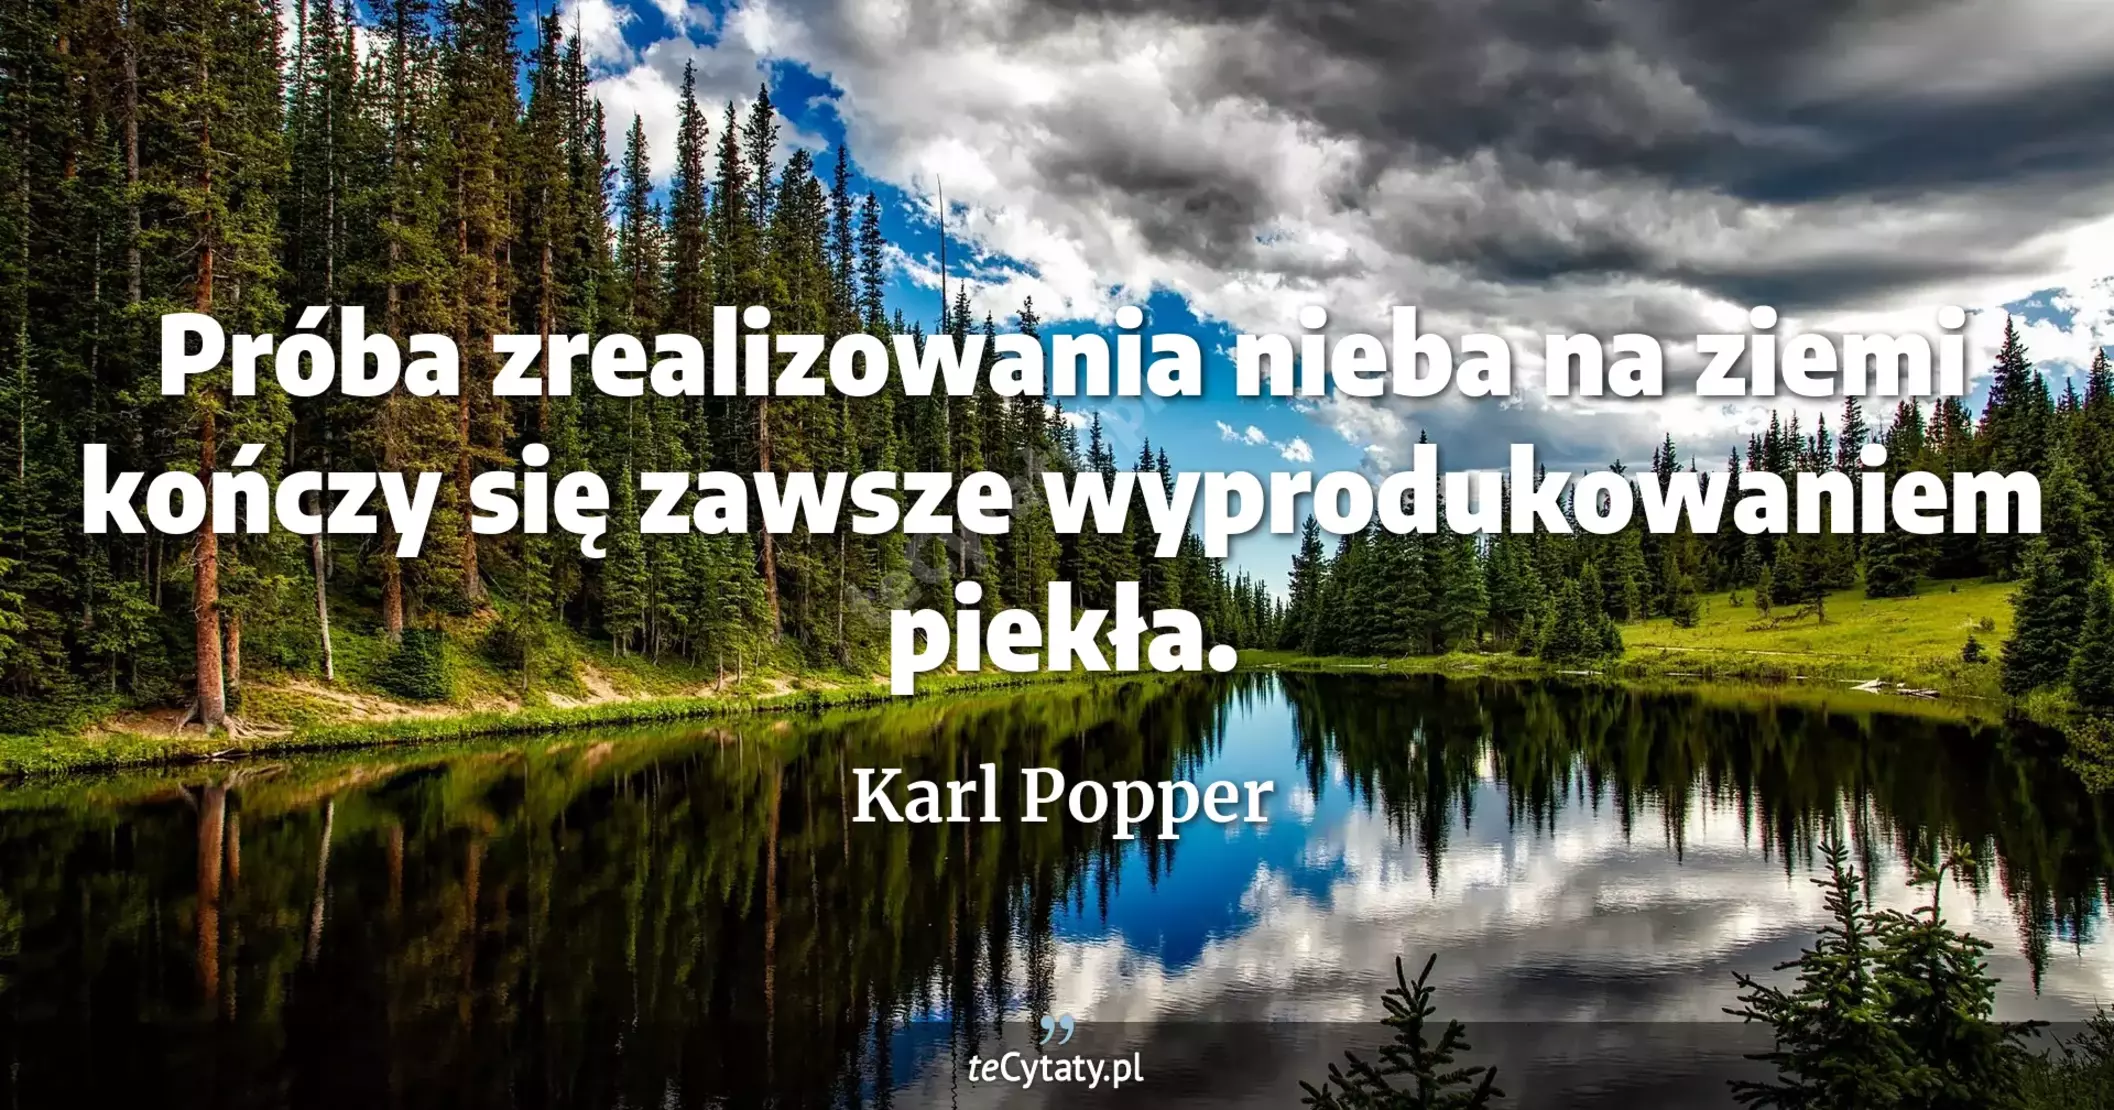 Próba zrealizowania nieba na ziemi kończy się zawsze wyprodukowaniem piekła. - Karl Popper